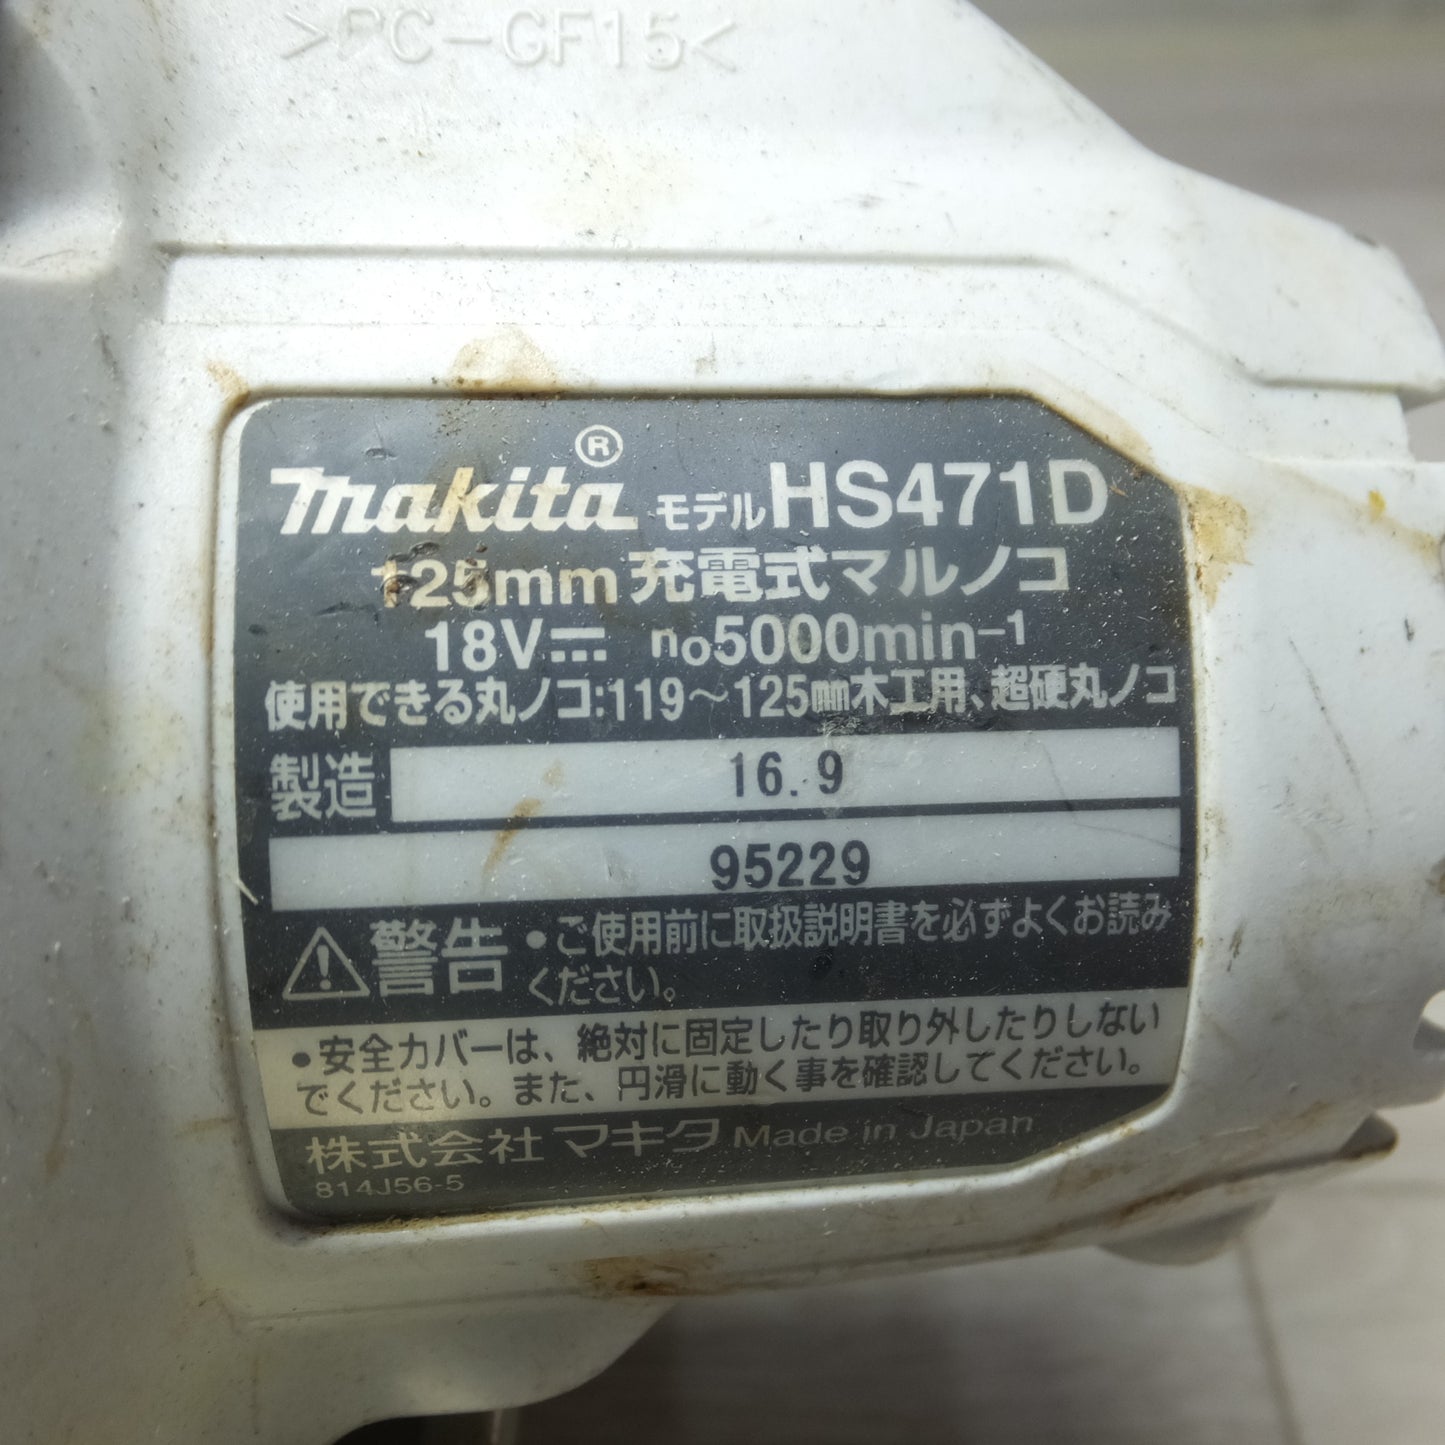 [送料無料] ◆makita マキタ 125mm 充電式マルノコ HS471D 18V 切断機 丸のこ 本体のみ◆